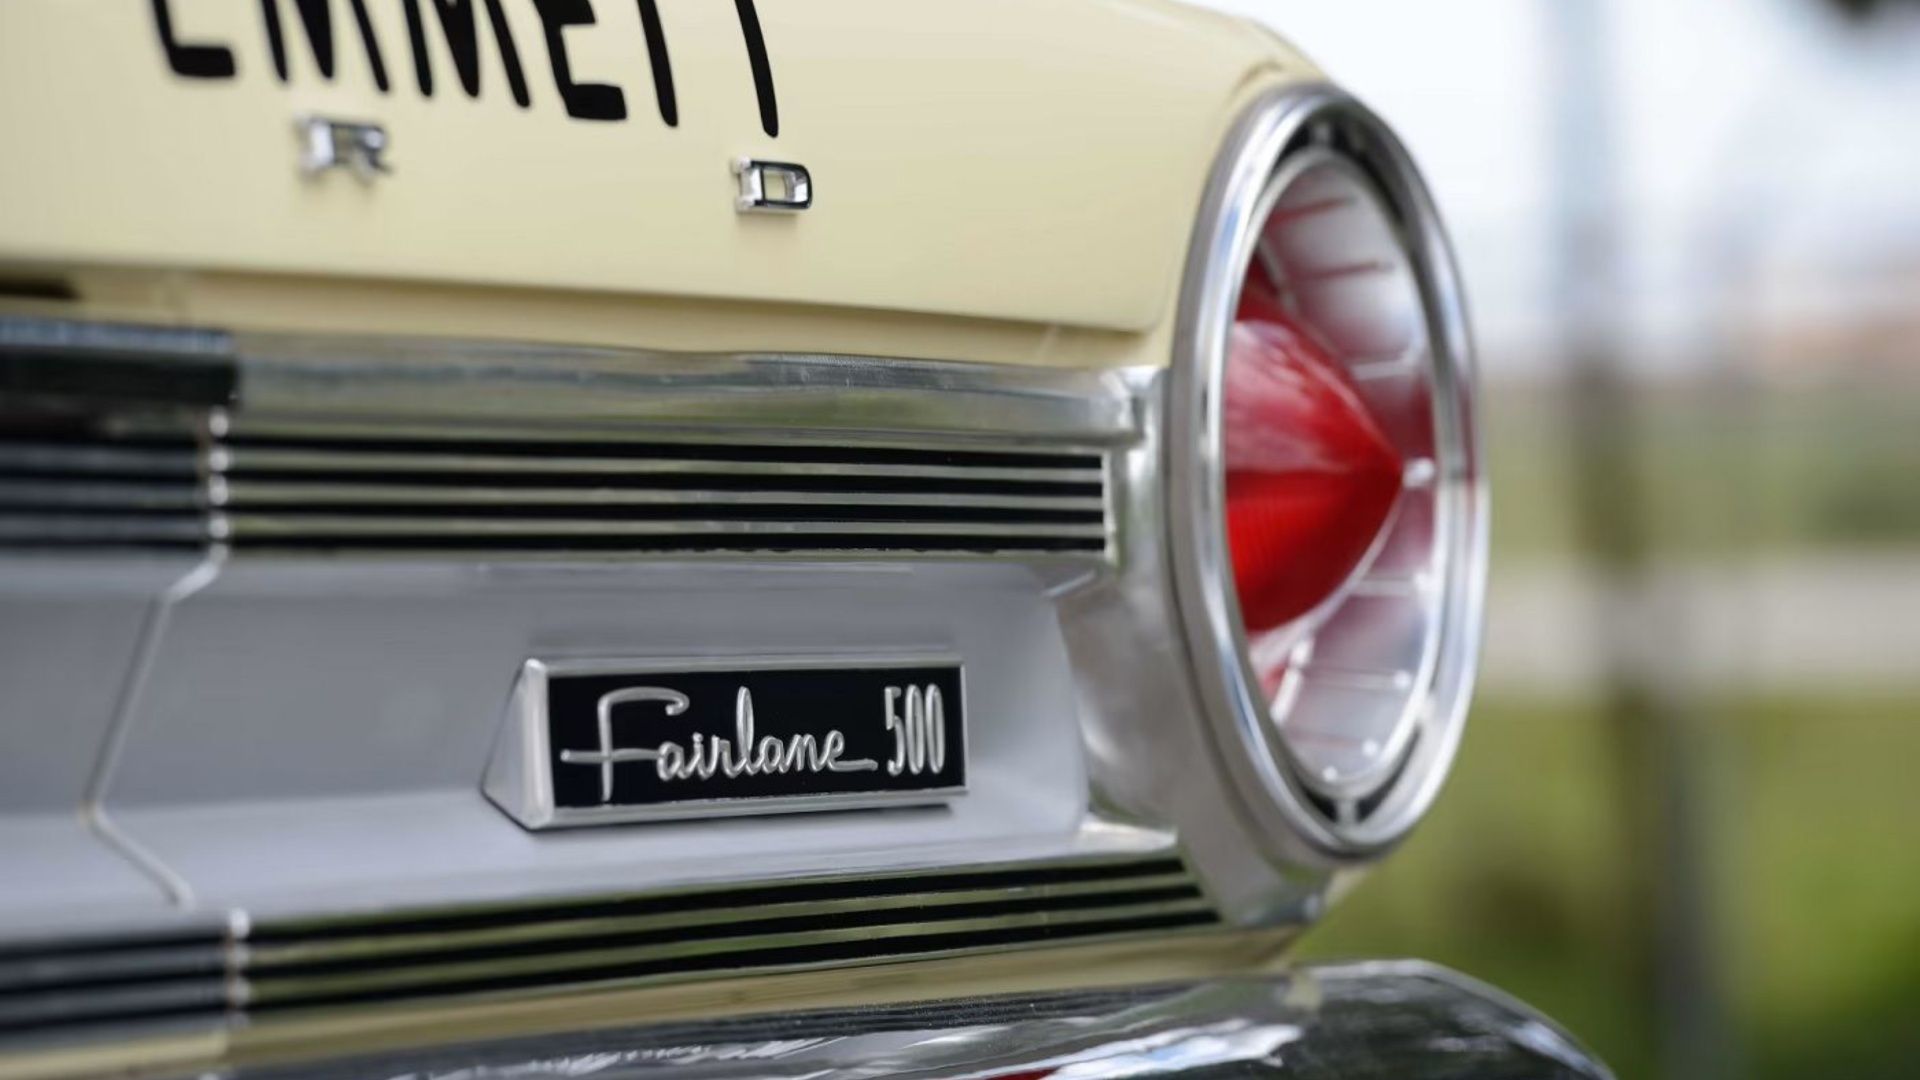 1964 Ford Fairlane Thunderbolt badging